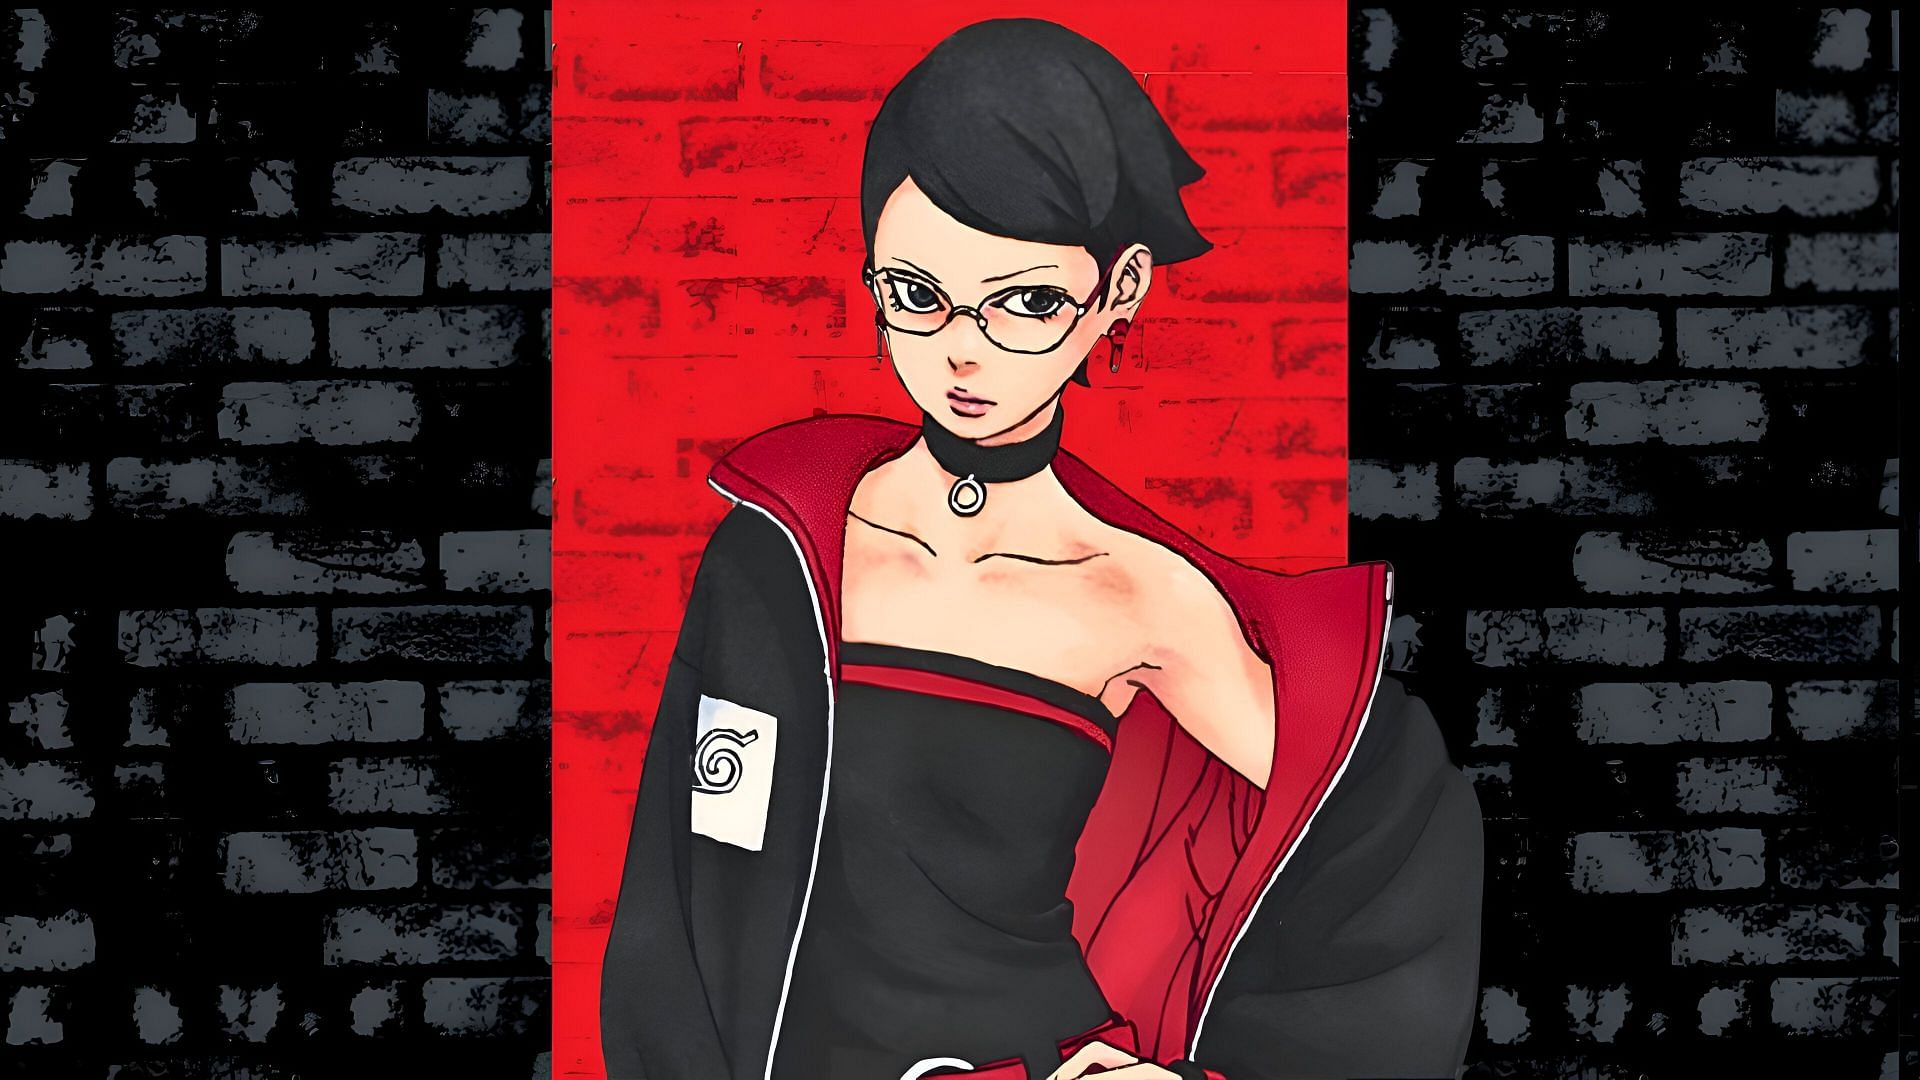 Sarada Uchiha as seen in the manga (Image via Shueisha)